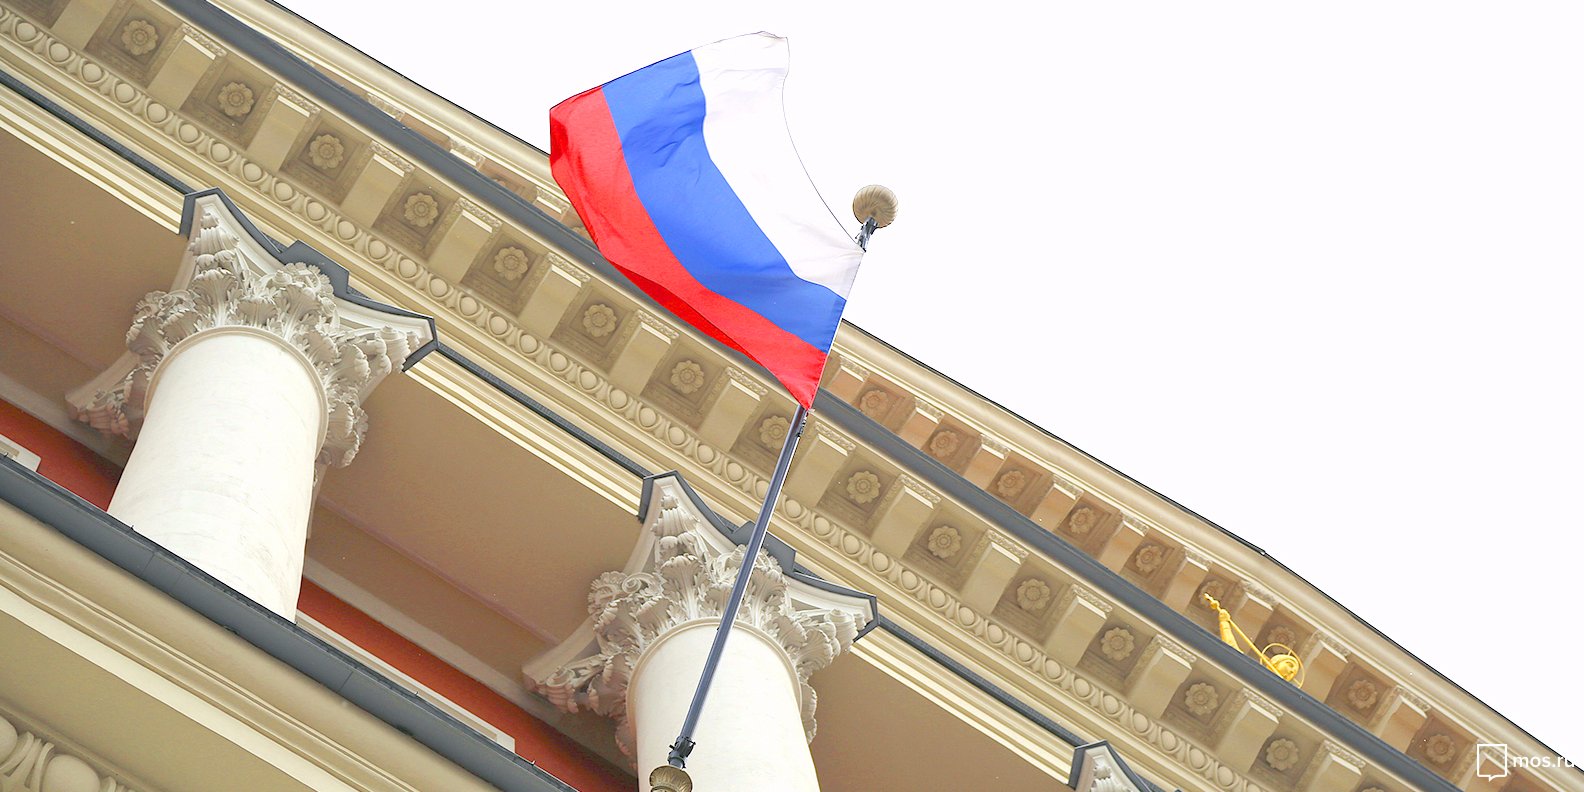 Бесплатные экскурсии ко Дню флага пройдут в Музее современной истории. Фото: сайт мэра Москвы